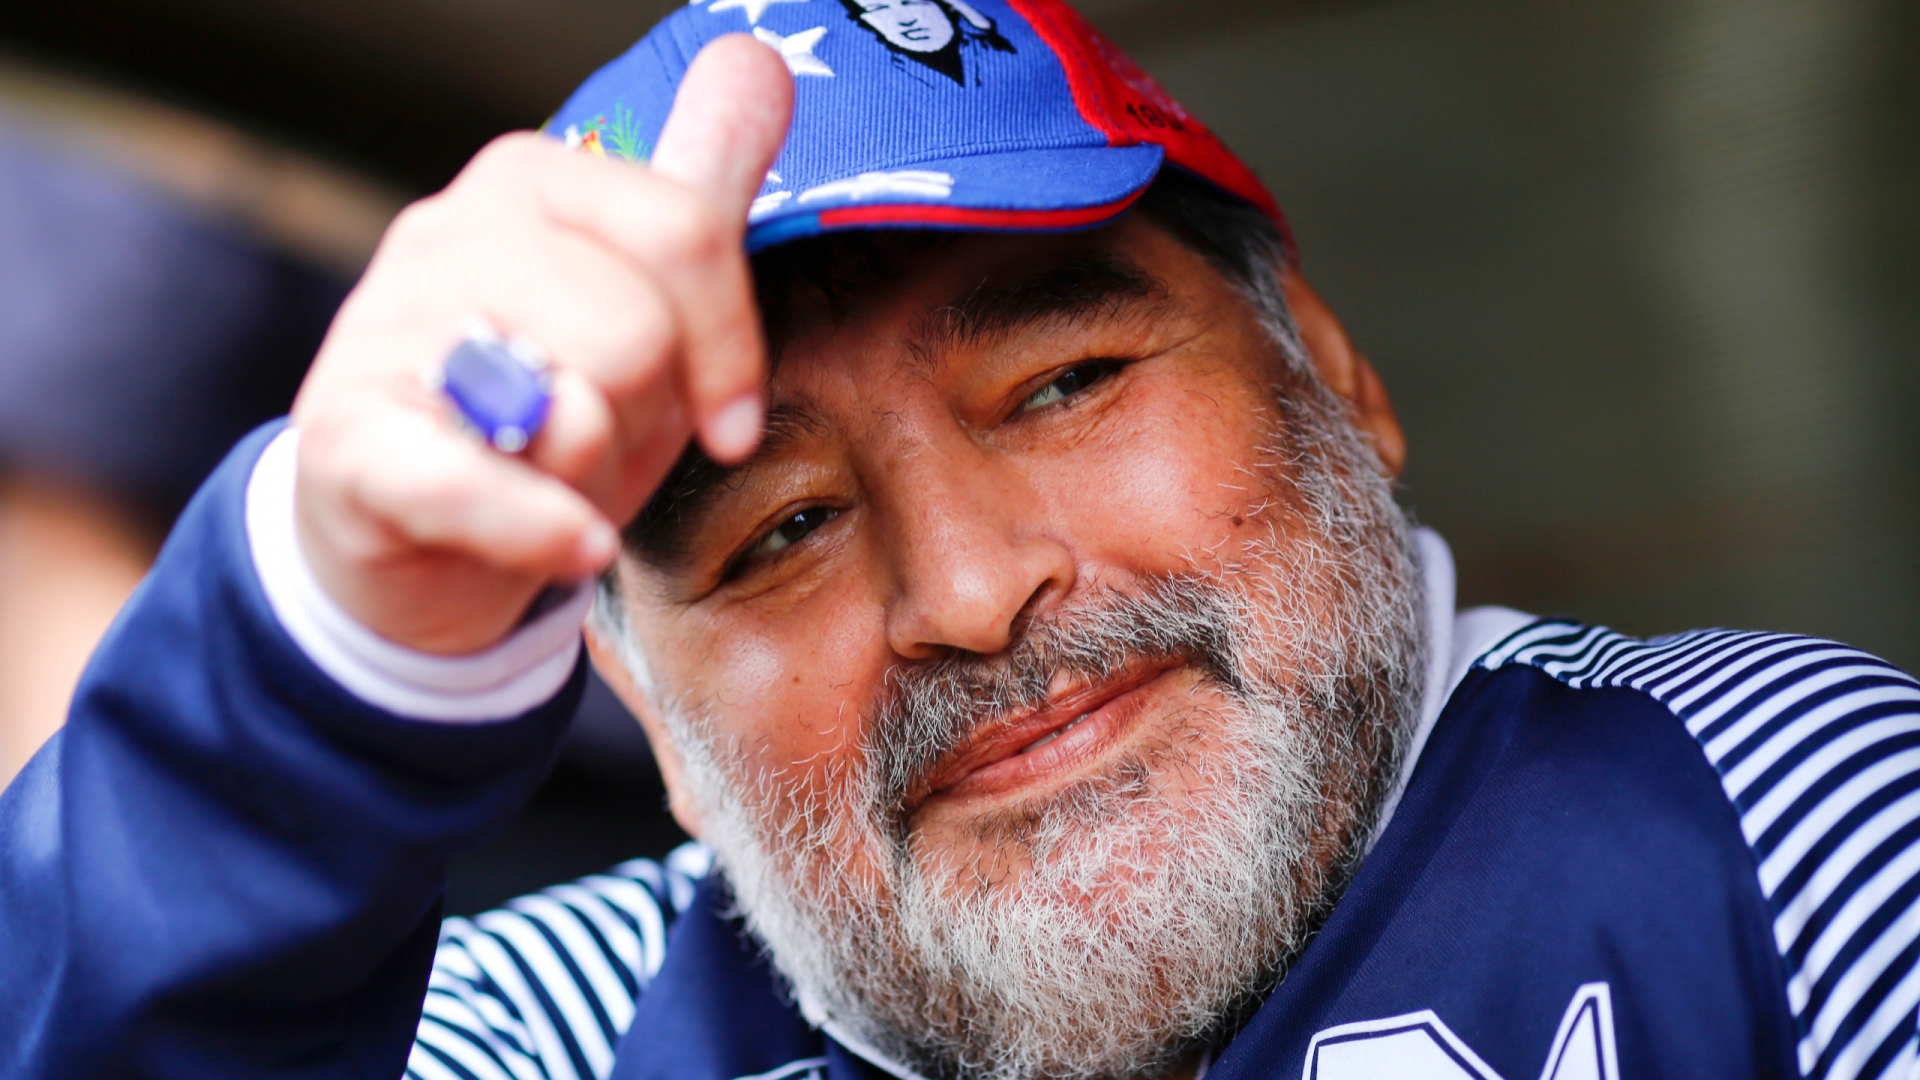 Huyền thoại bóng đá Maradona trước khi qua đời.